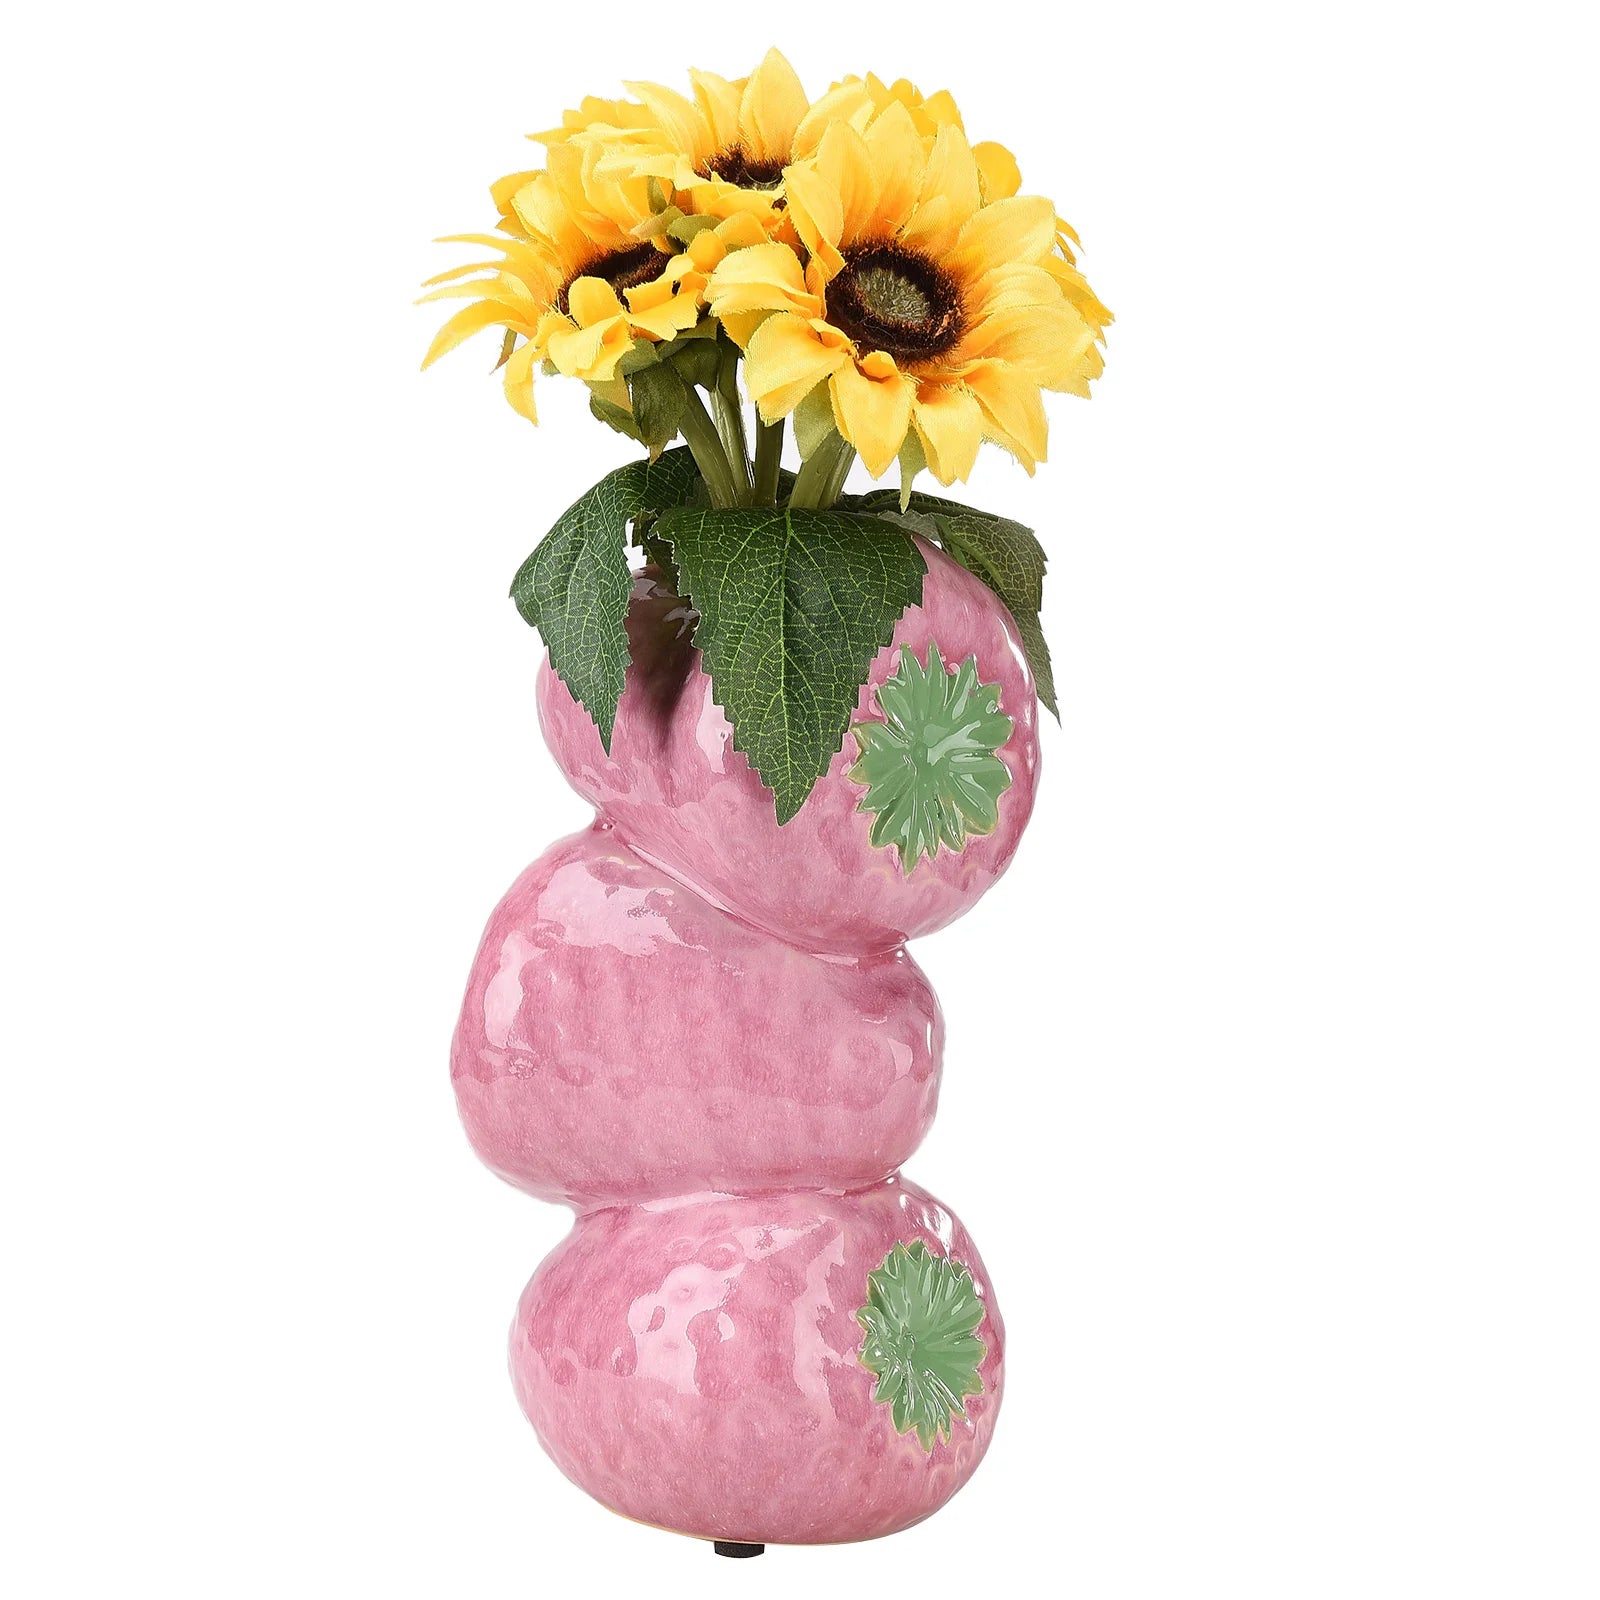 Strawberry Vase Ceramic Artificial Fruit